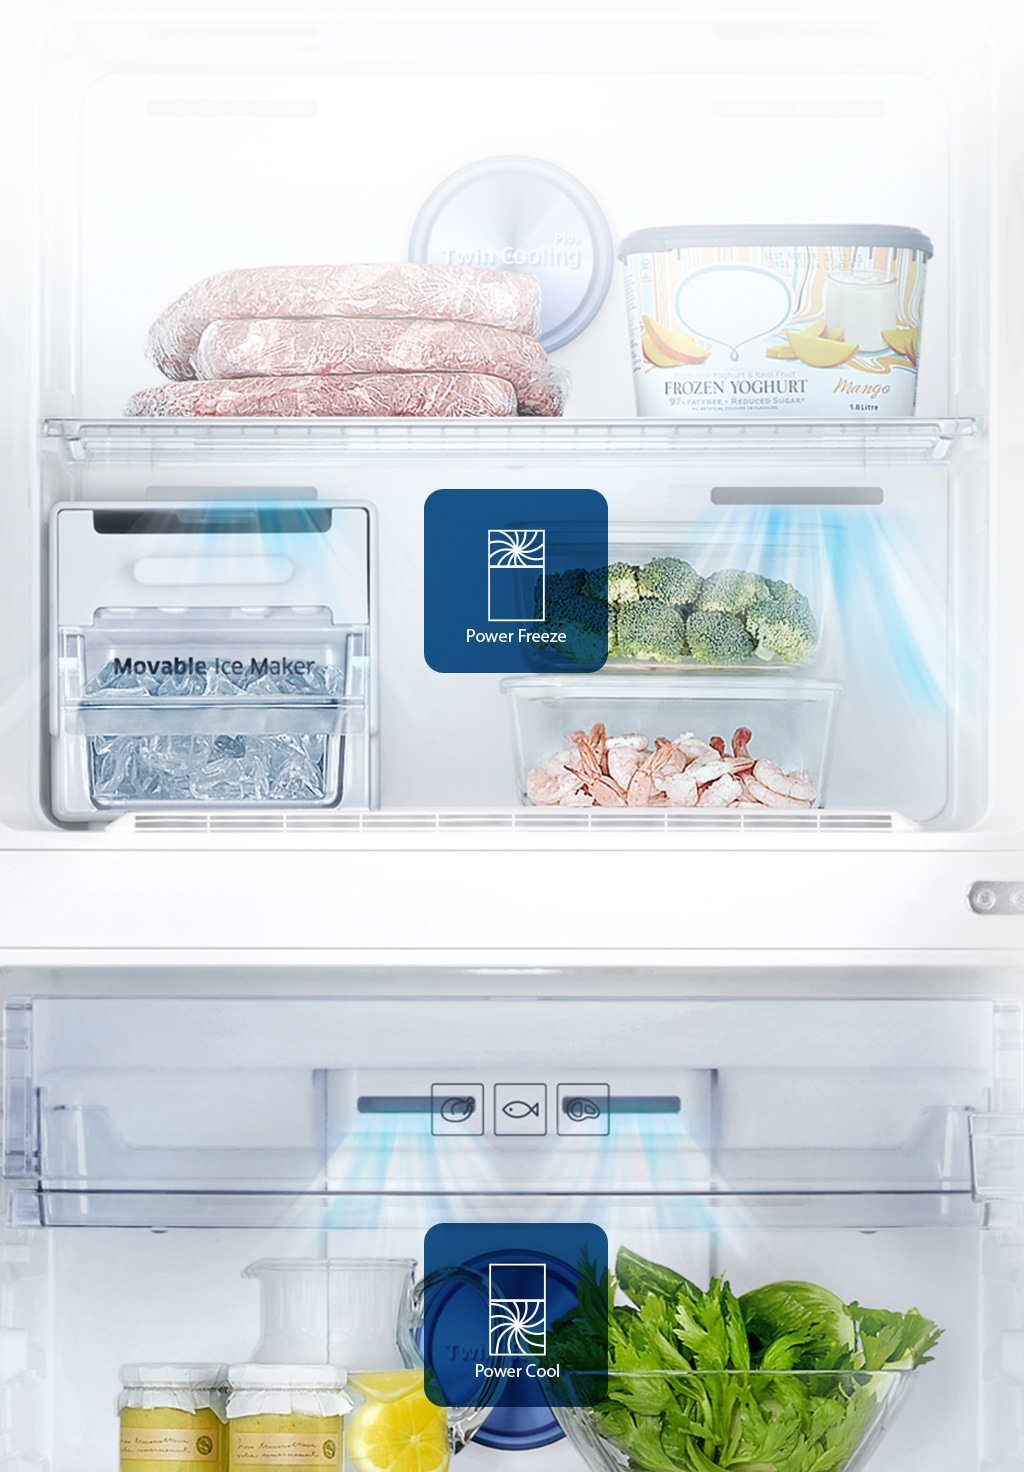 Réfrigérateur Samsung 2 Portes NO FROST GRIS RT30A3000SA – SWITCH Maroc